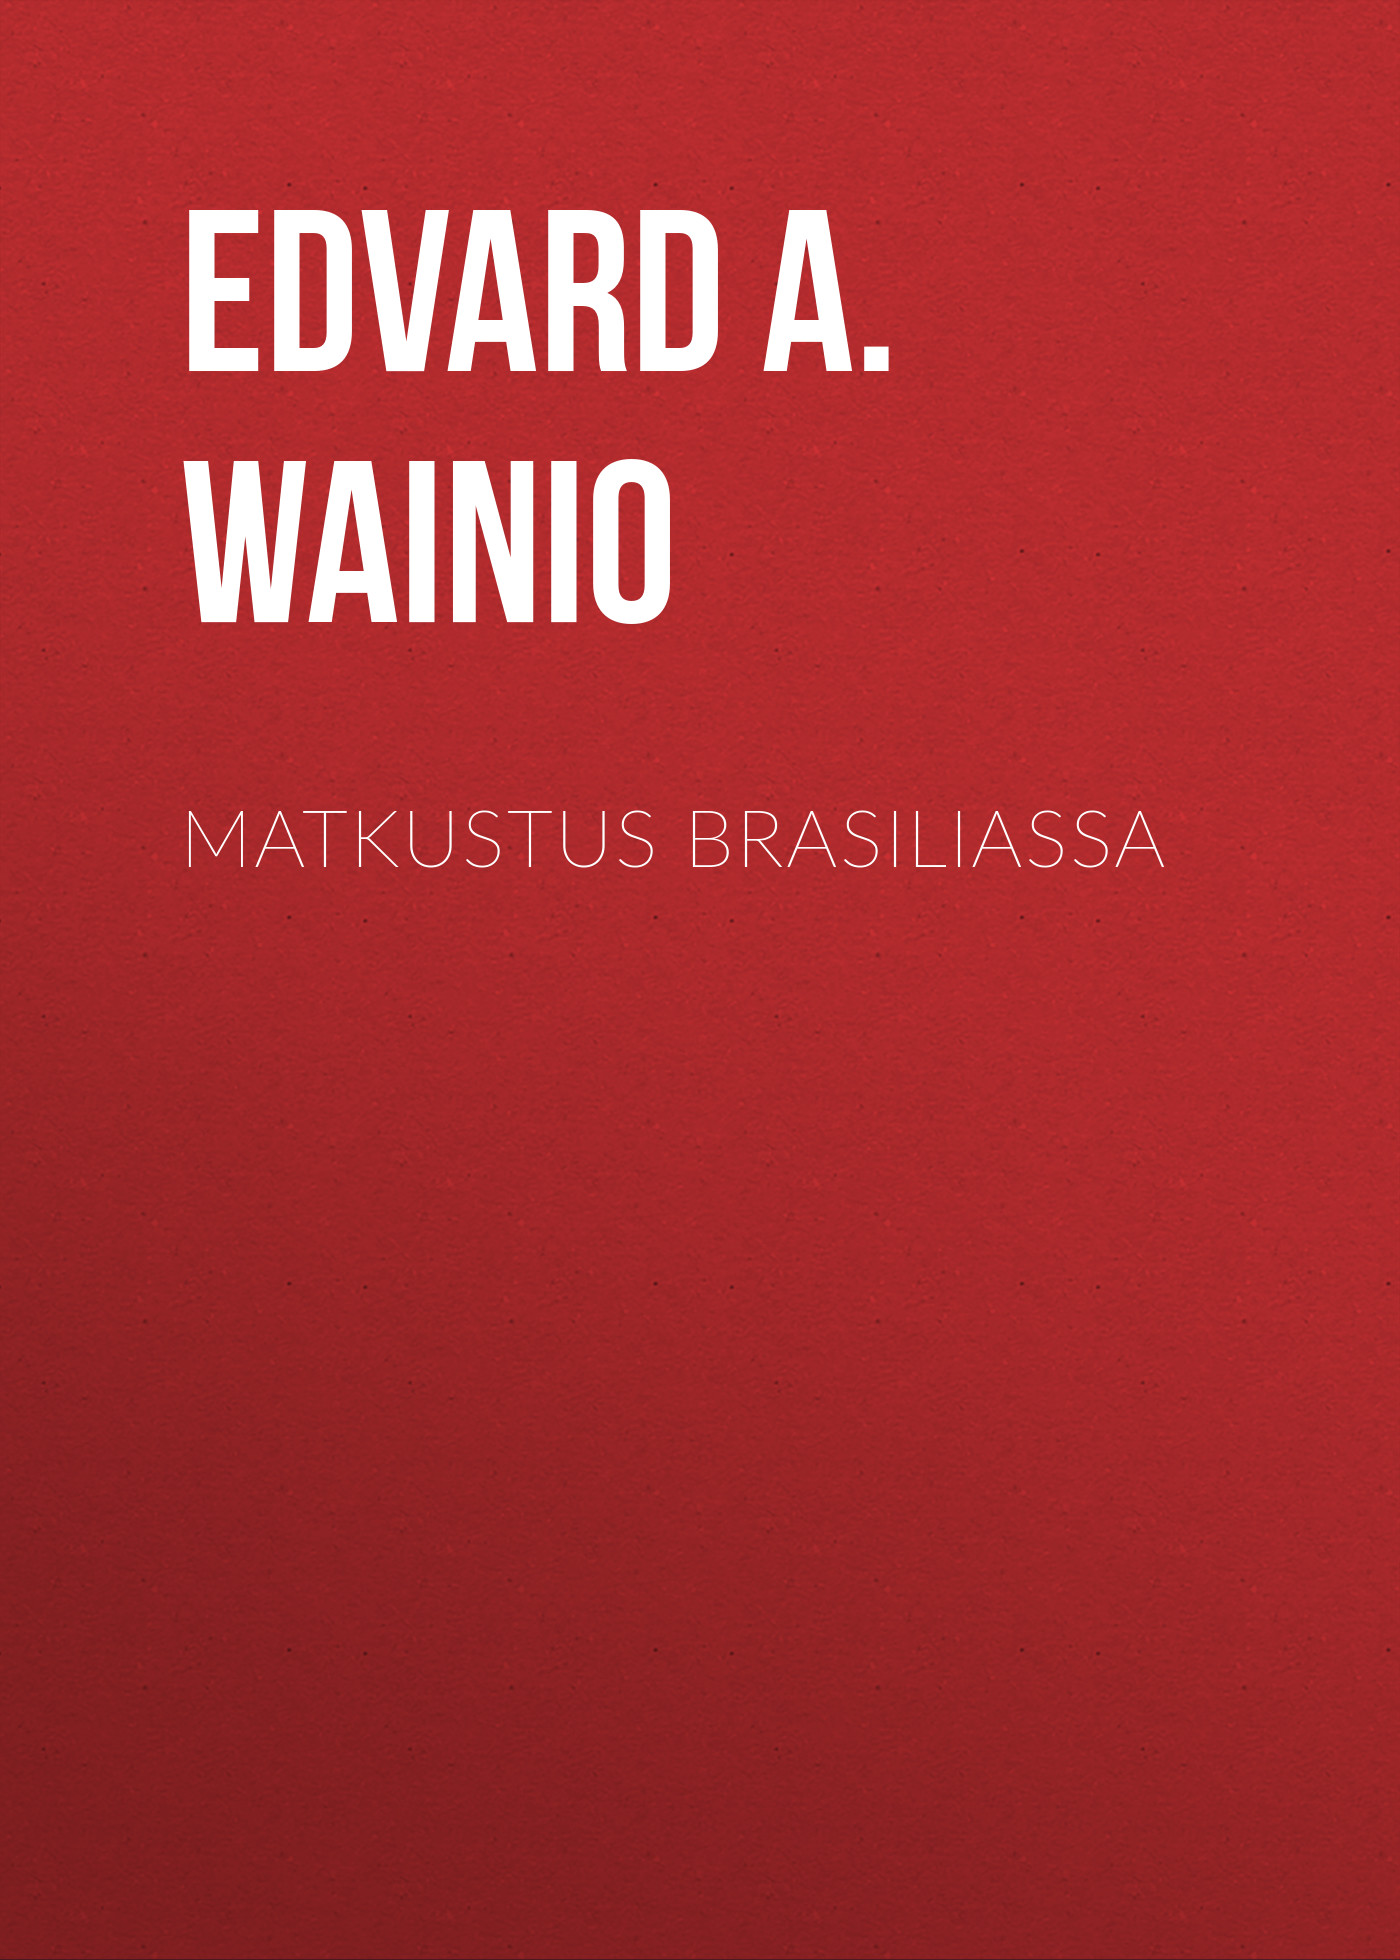 Книга Matkustus Brasiliassa из серии , созданная Edvard Wainio, может относится к жанру Зарубежная классика, Зарубежная старинная литература. Стоимость электронной книги Matkustus Brasiliassa с идентификатором 34283272 составляет 0 руб.